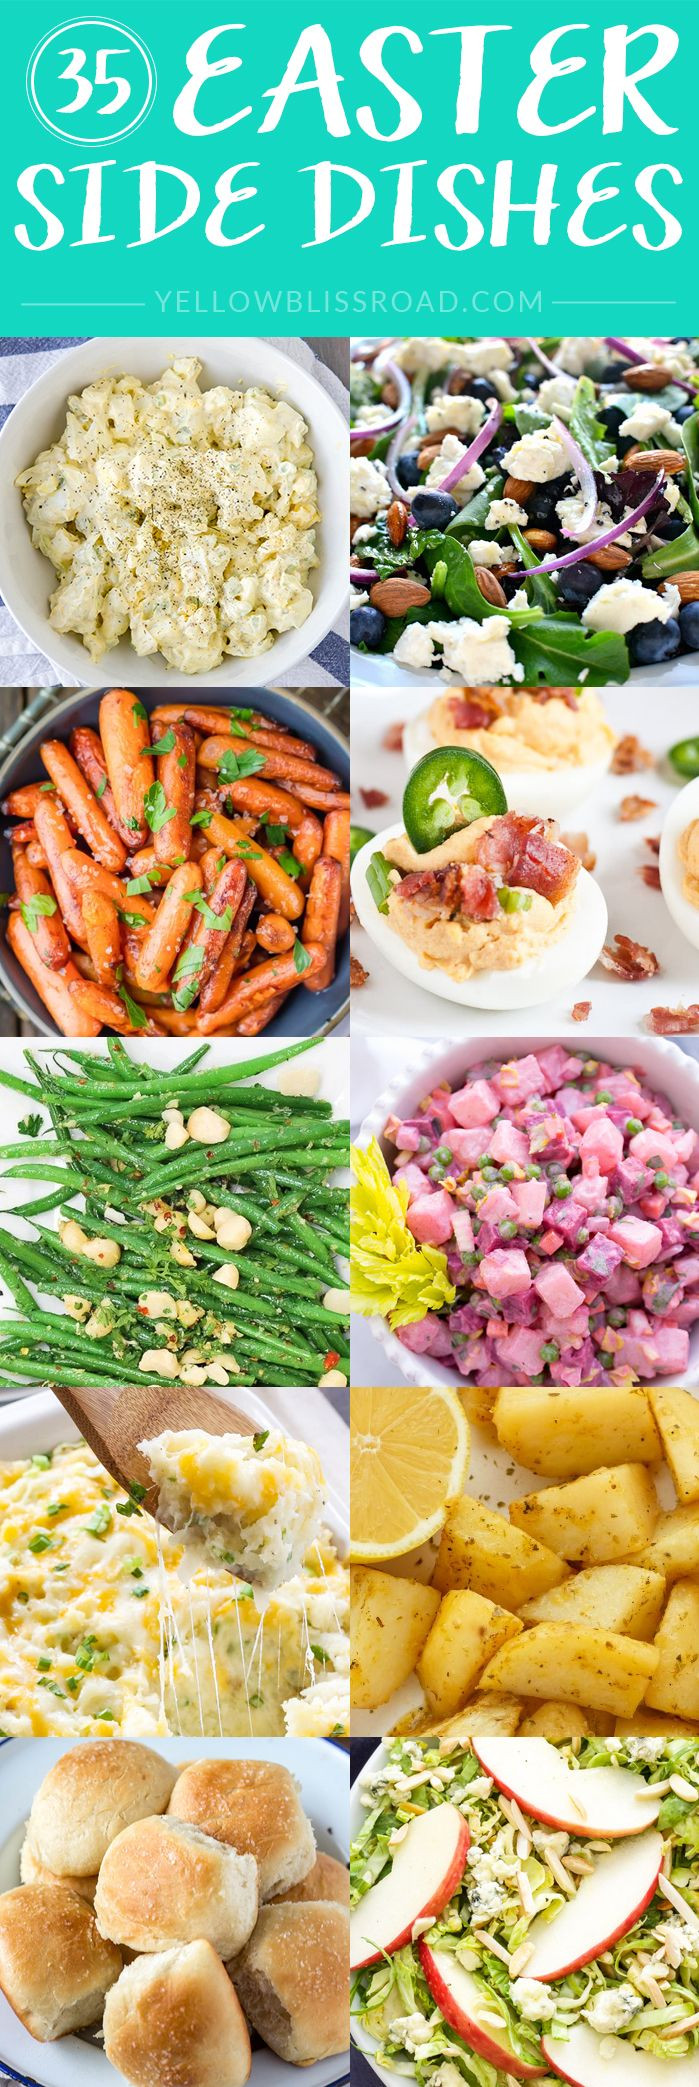 Sides For Easter Ham Dinner
 Best 25 Easter ideas on Pinterest